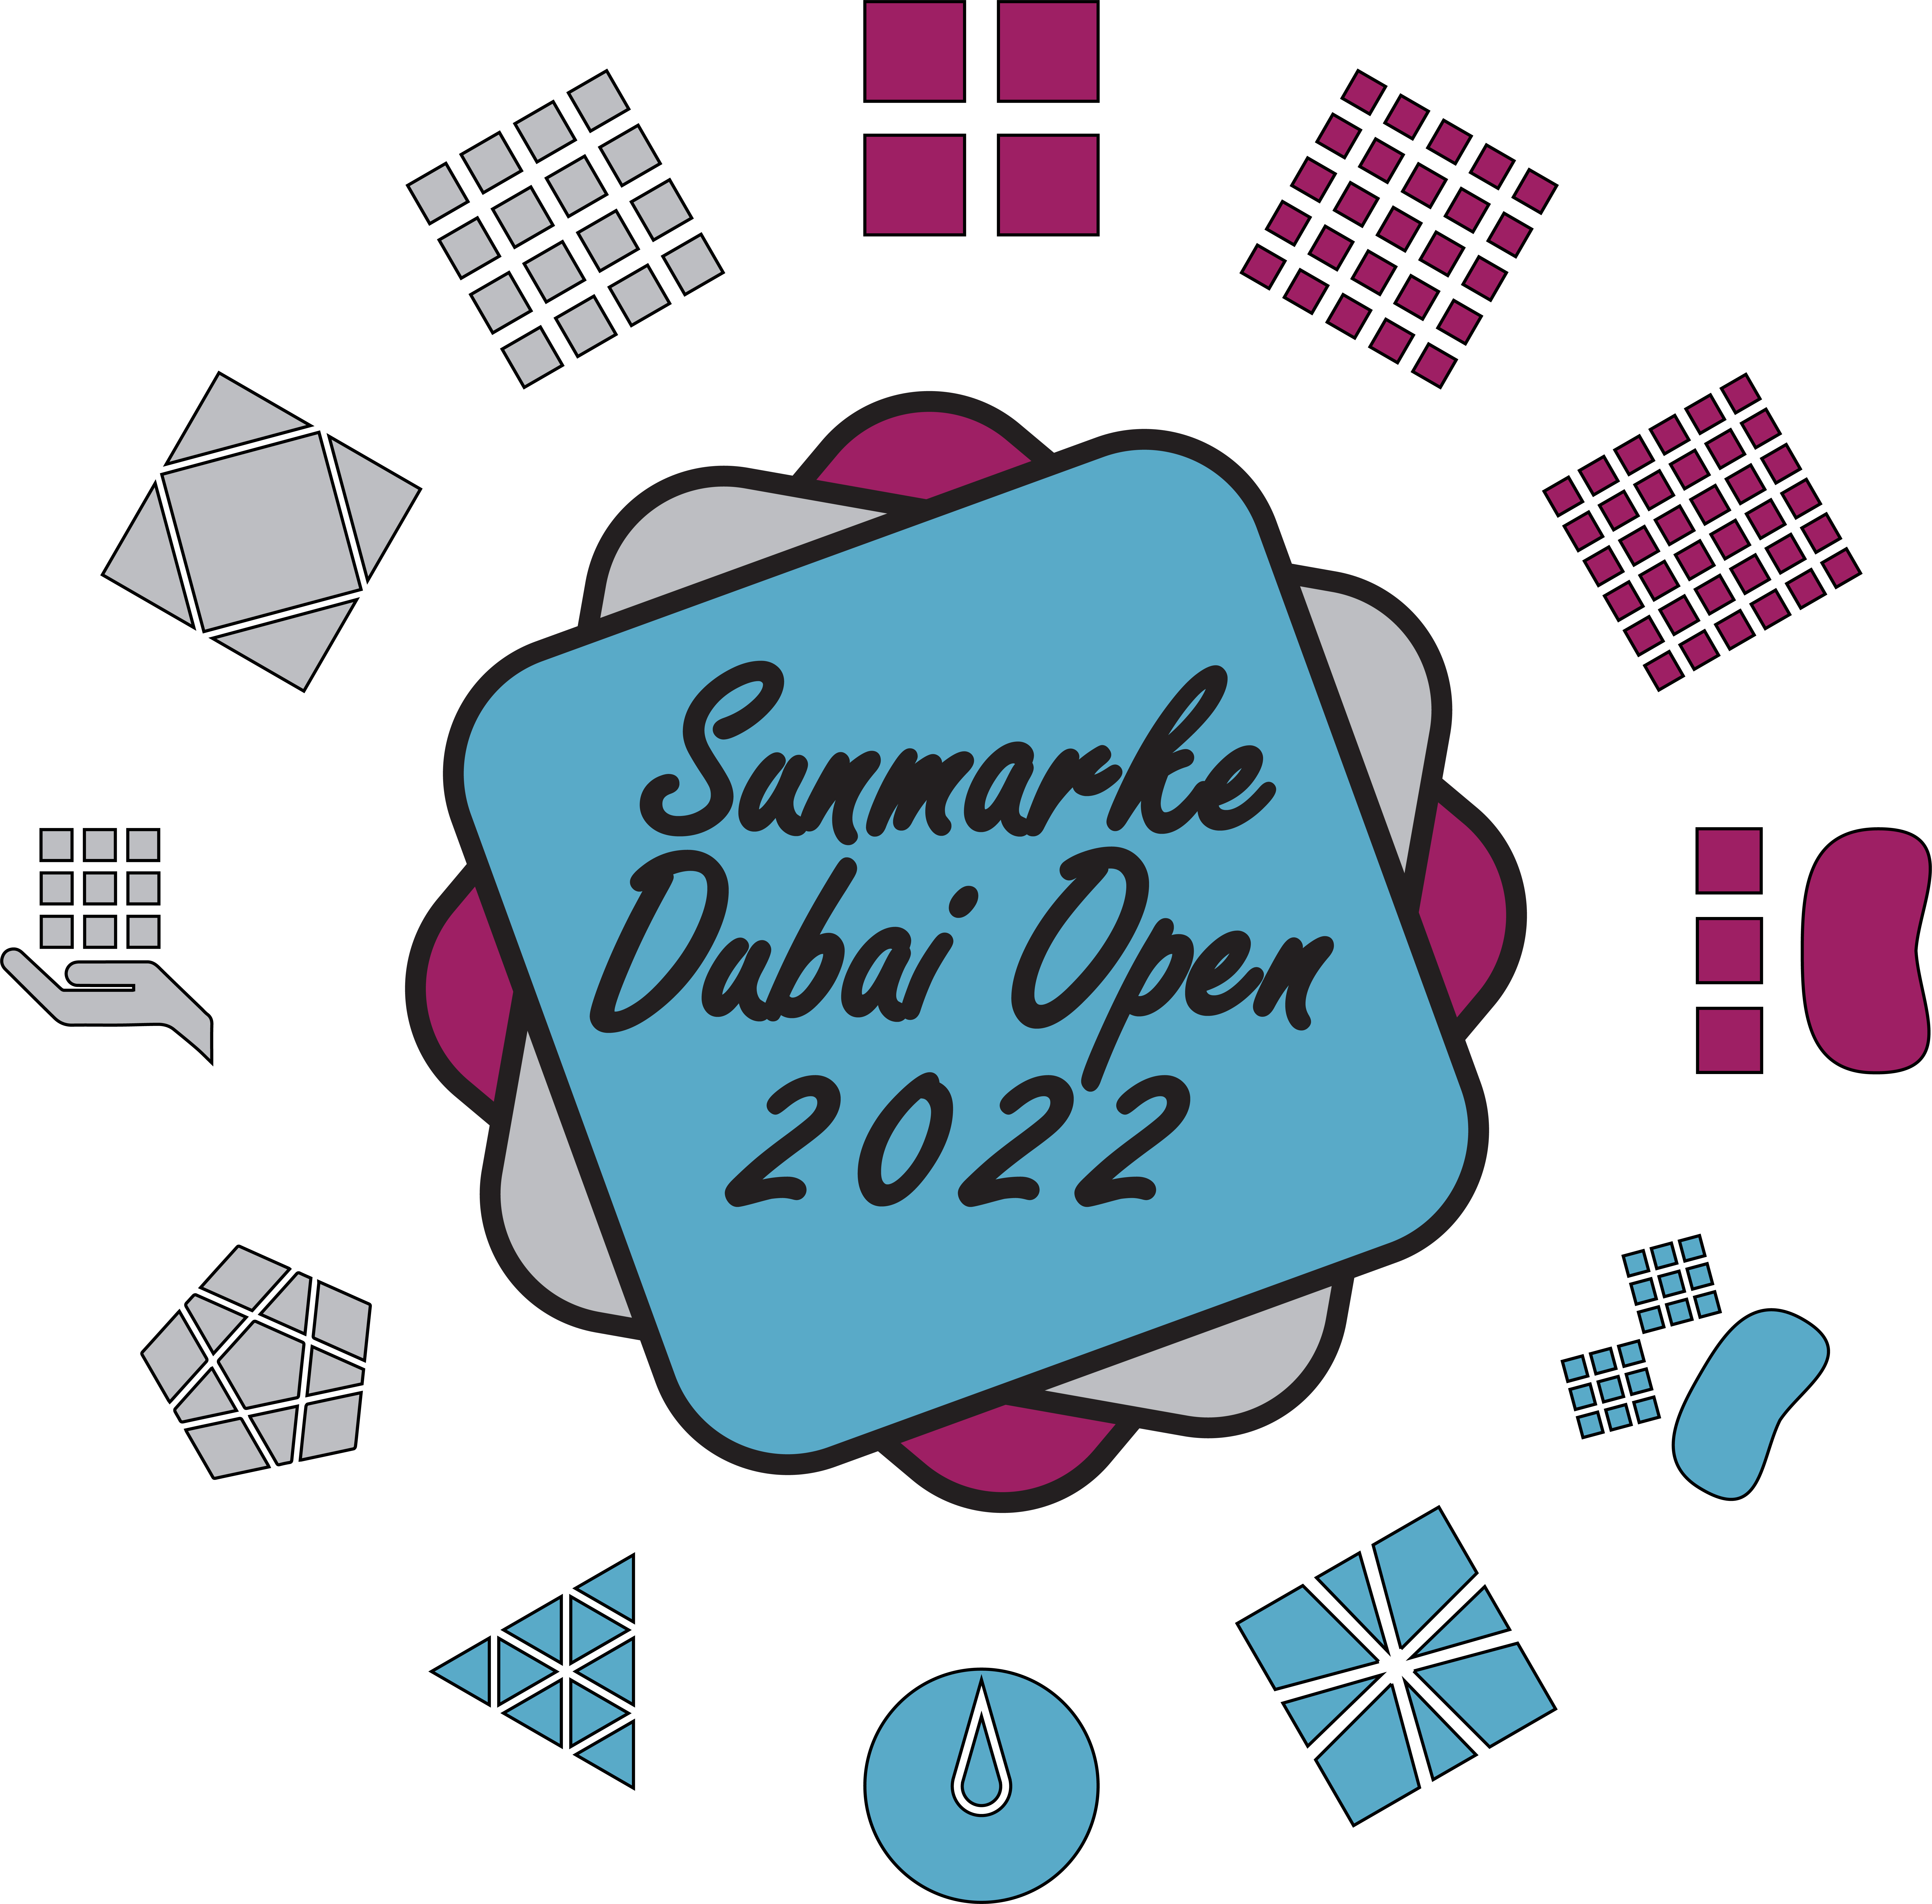 Sunmarke Dubai Open 2022